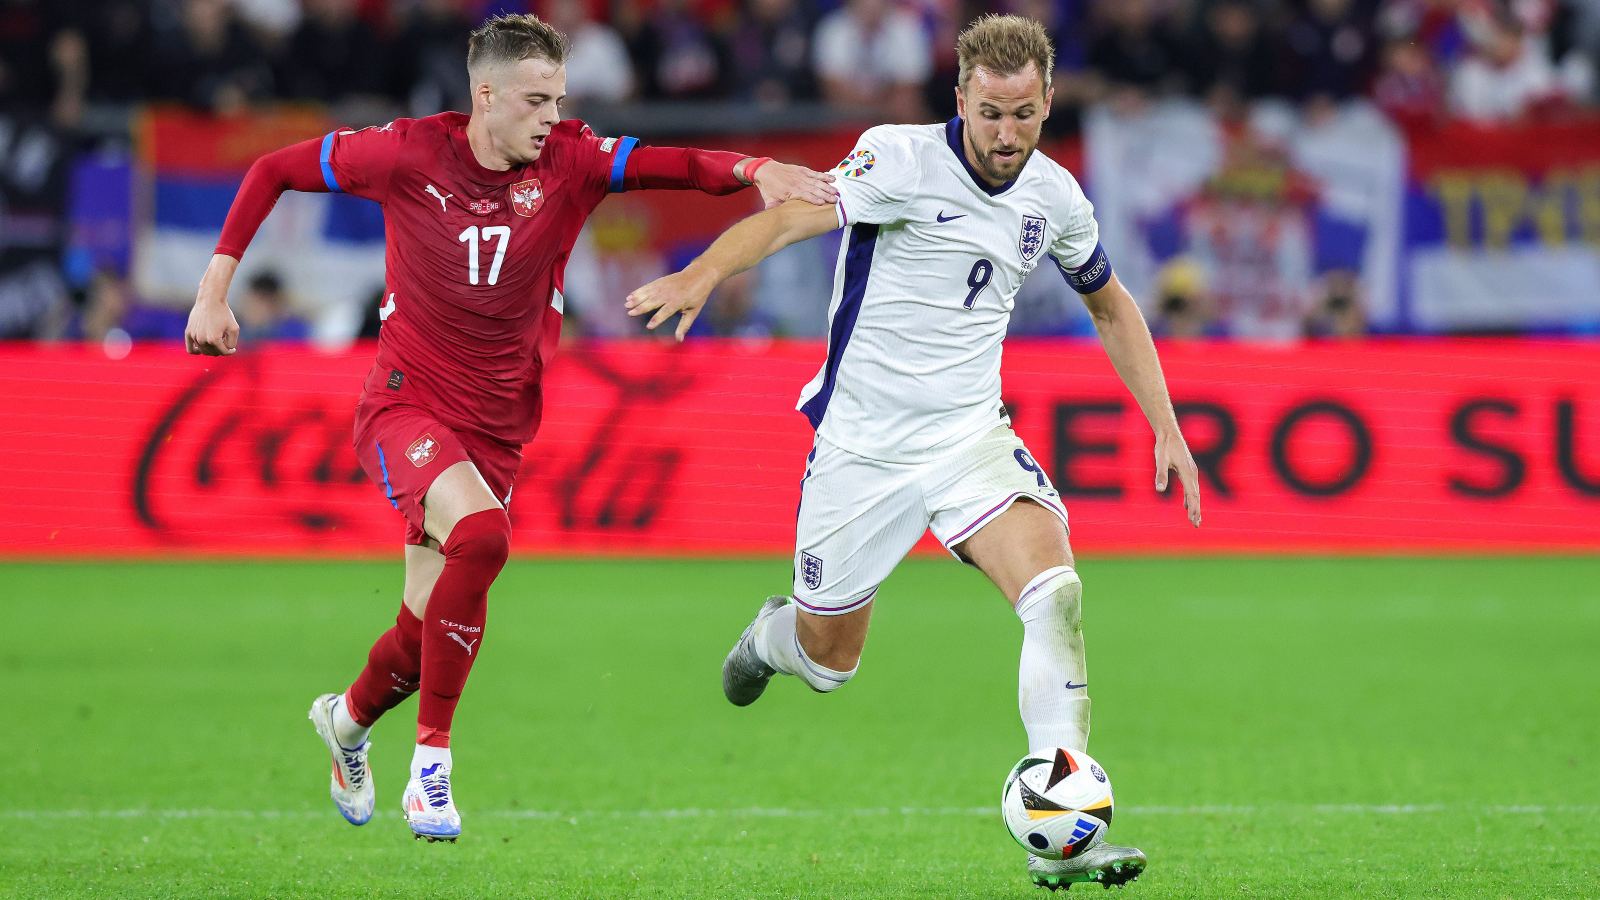 Ο τραυματισμός του Σέρβου μπακ στο ματς με την Αγγλία αποδείχθηκε σοβαρός